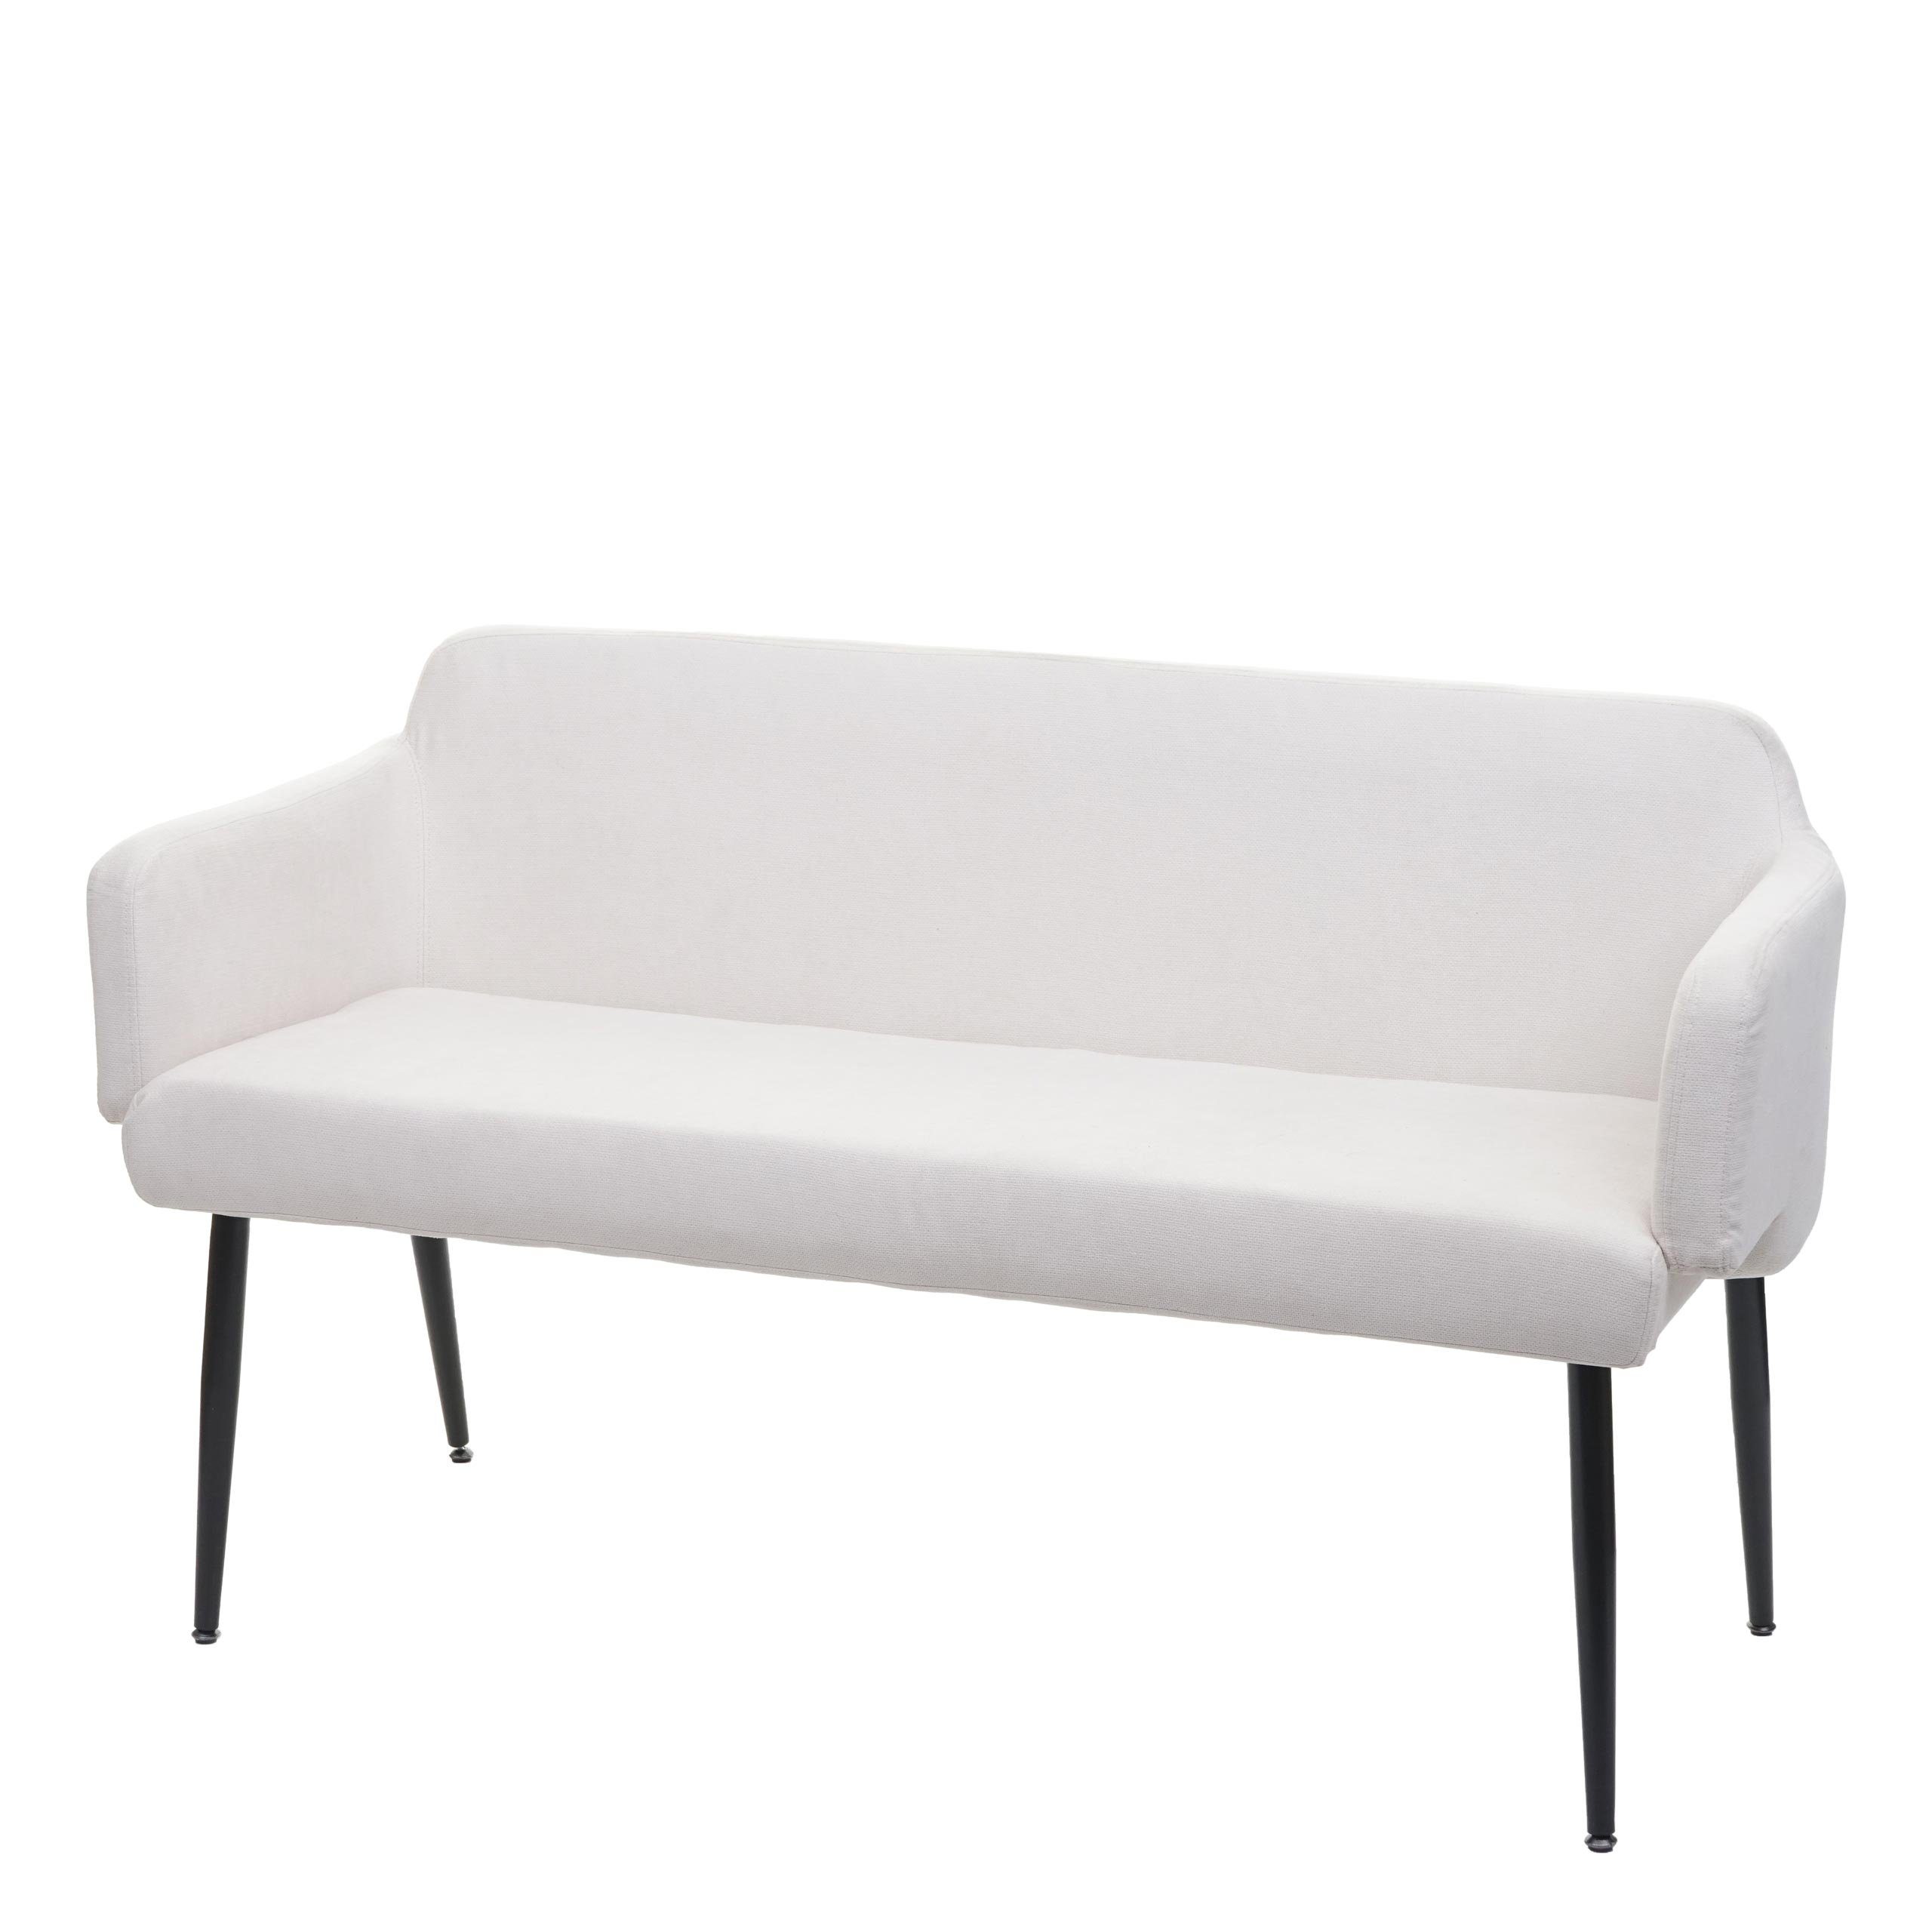 MCW Sitzbank MCW-L13-B, Schraubfüße, Rücken- und Armlehne, Abgerundete Sitz- und Rückenfläche creme-weiß | weiß | Sitzbänke